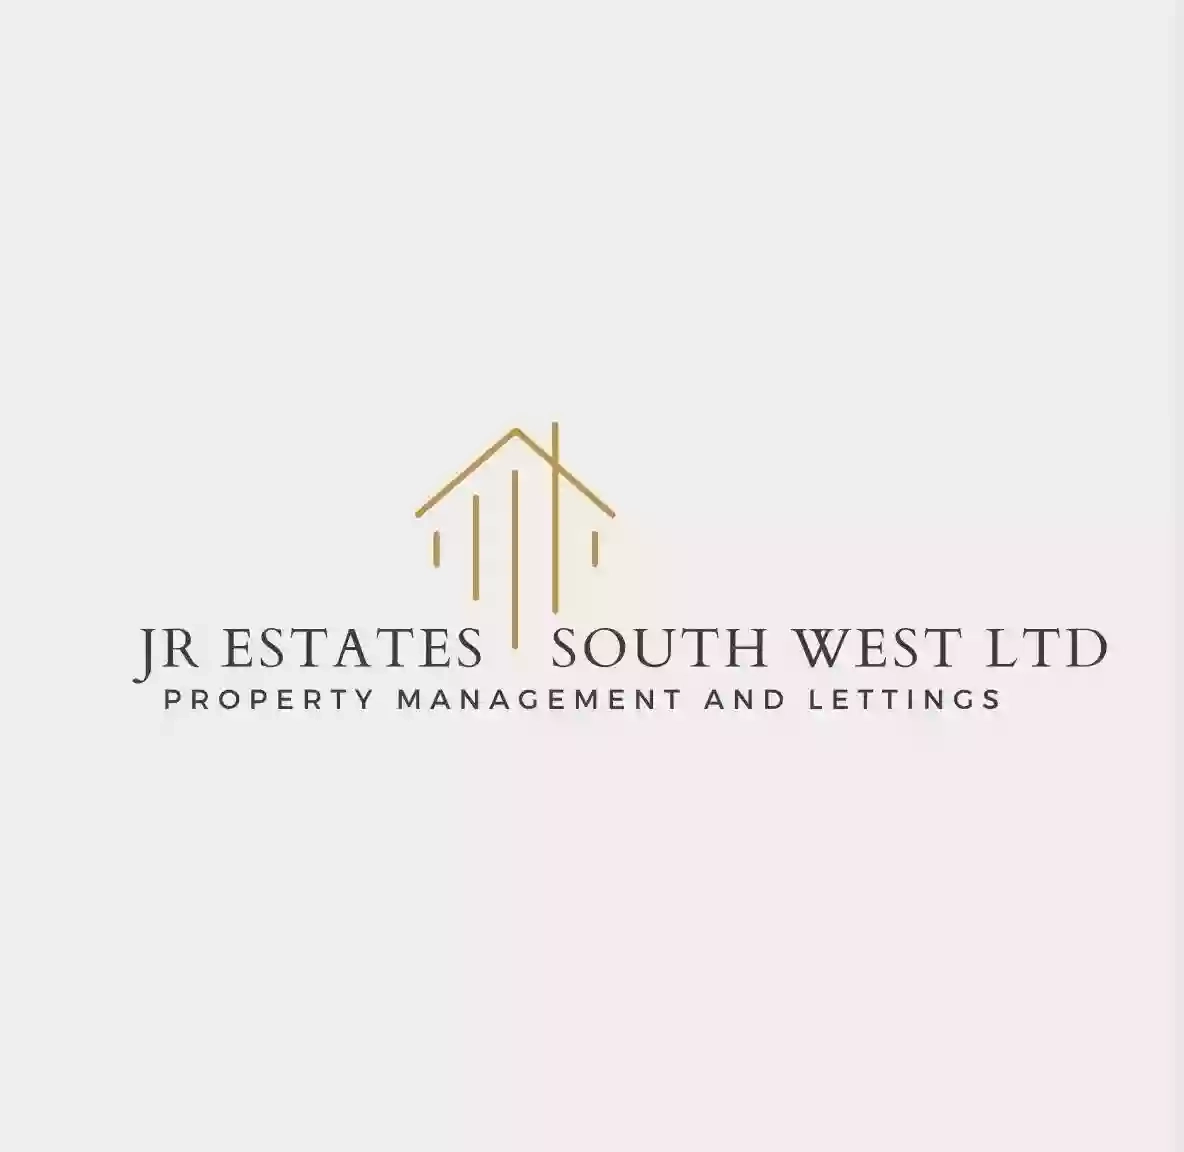 JR Estates South West Ltd